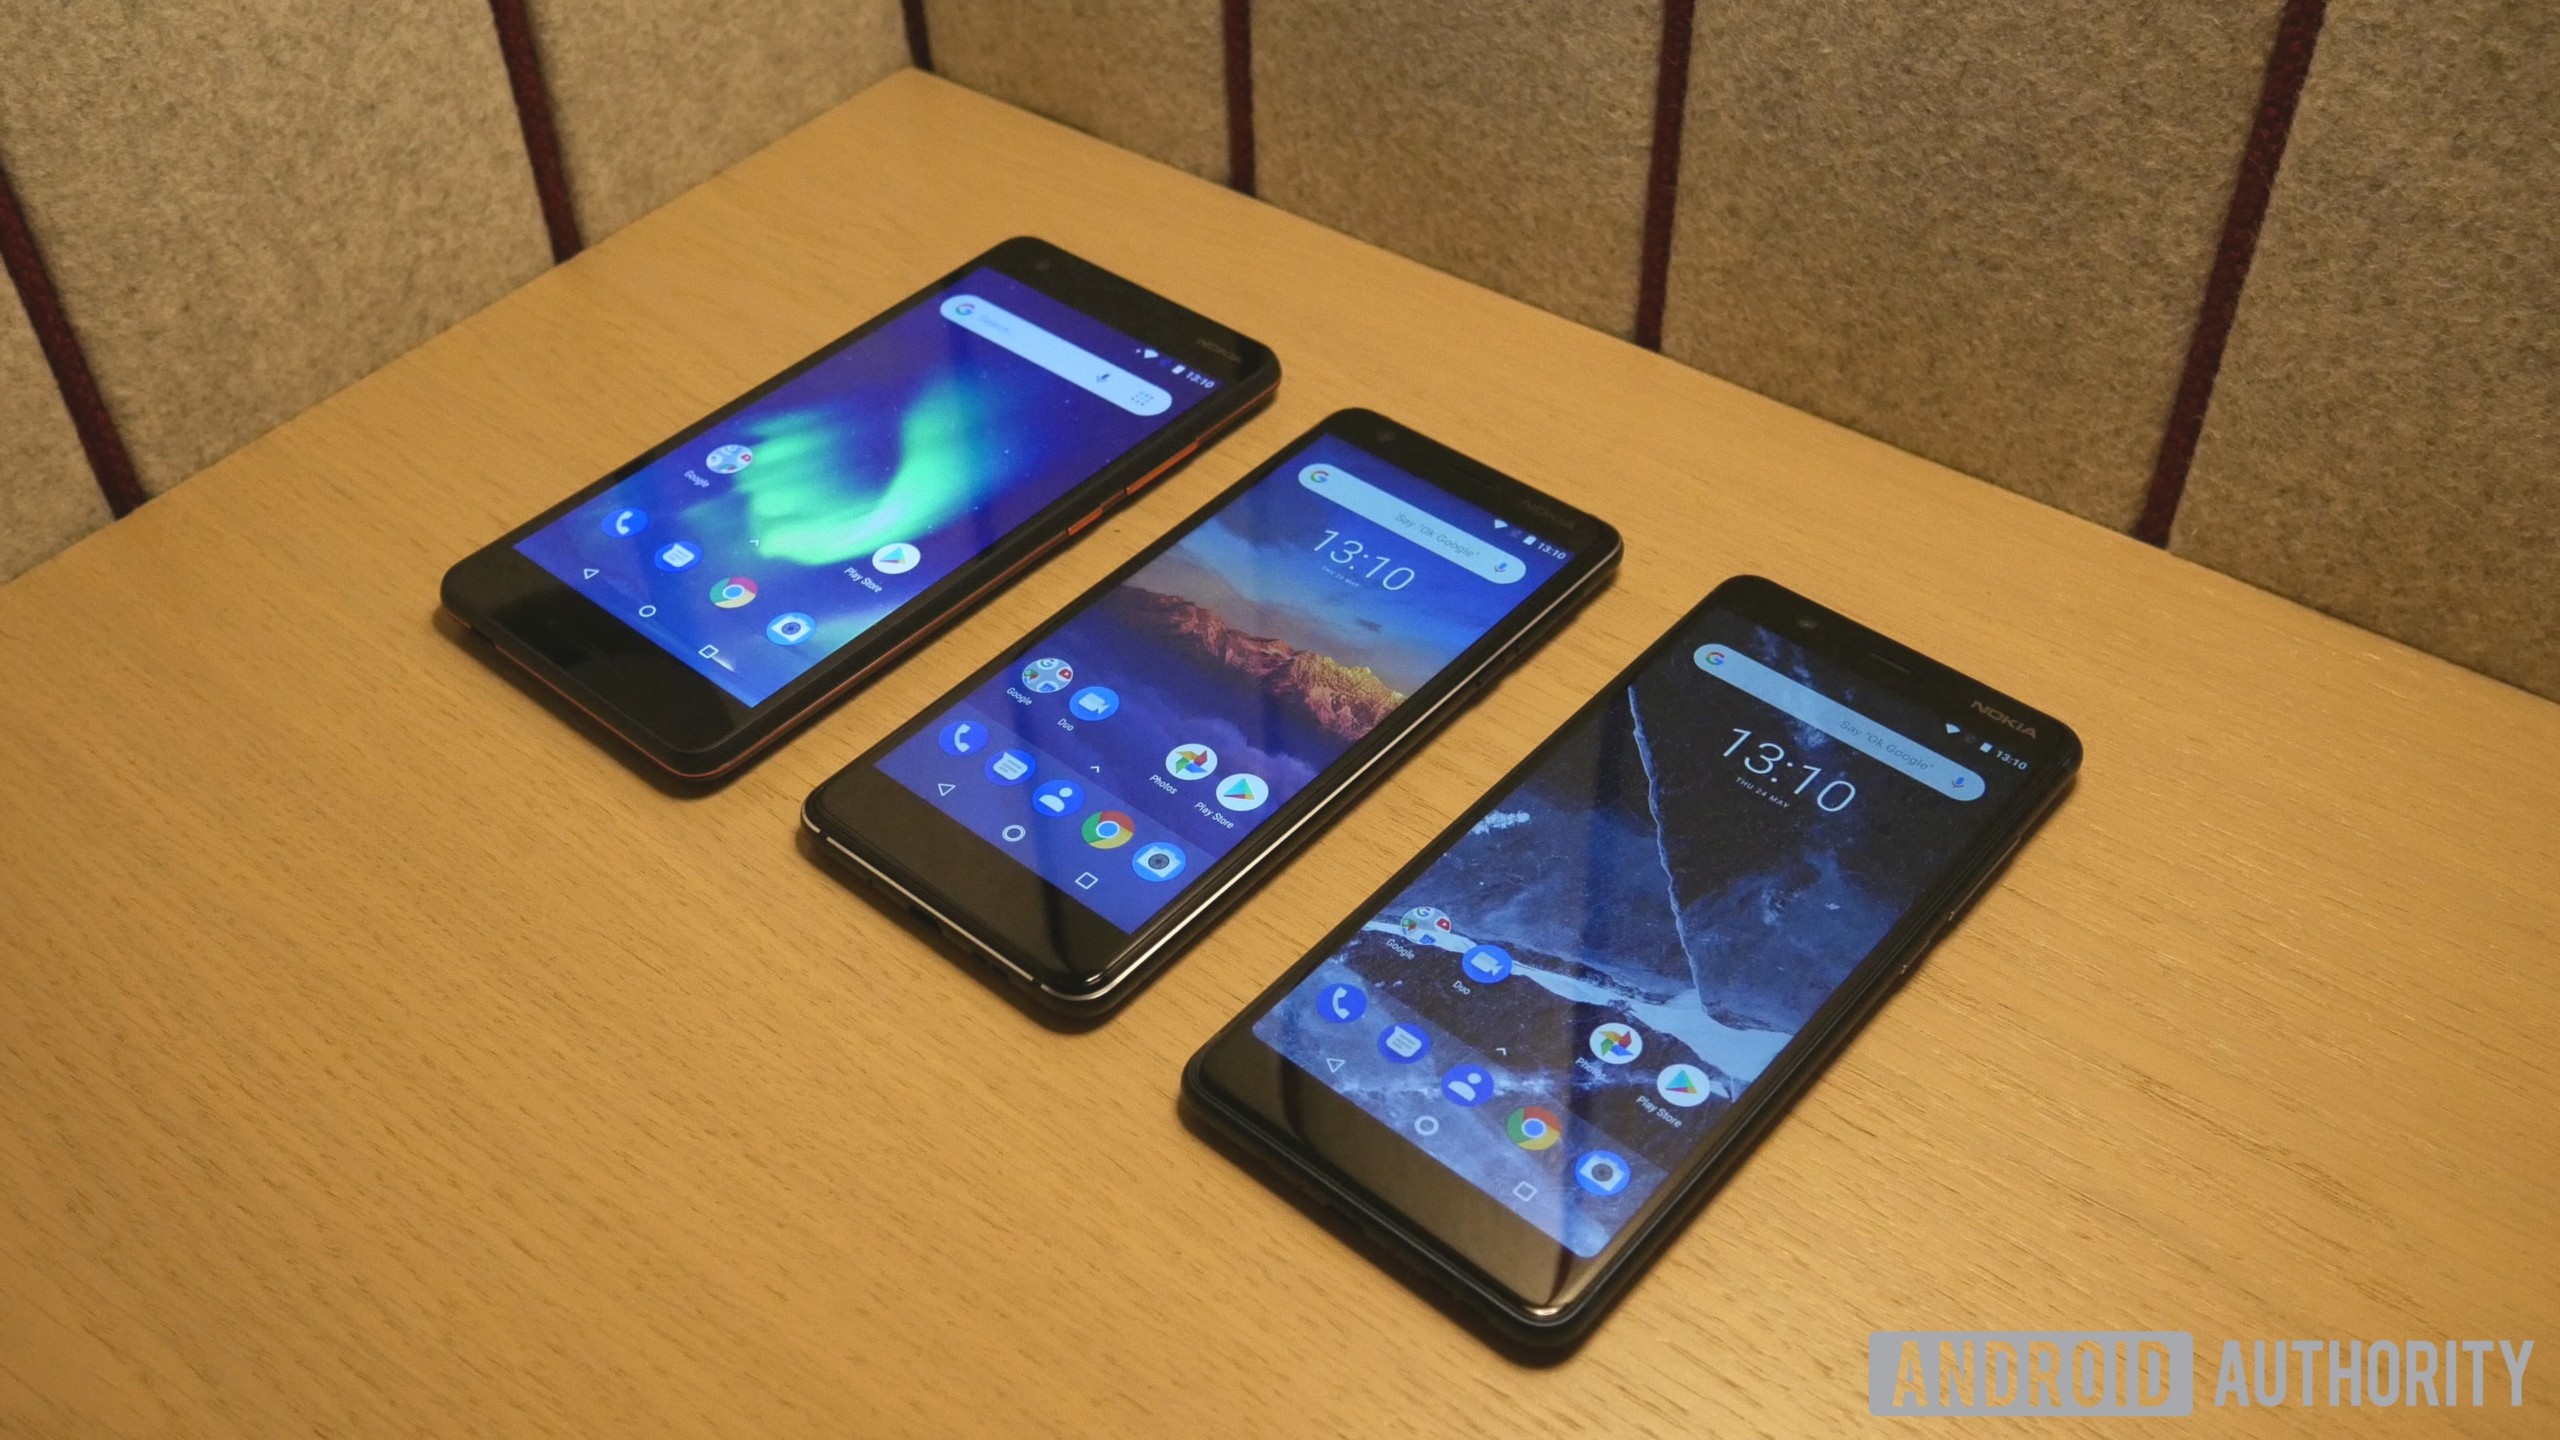 hands-on with Nokia 2.1, Nokia 3.1, Nokia 5.1 smartphones